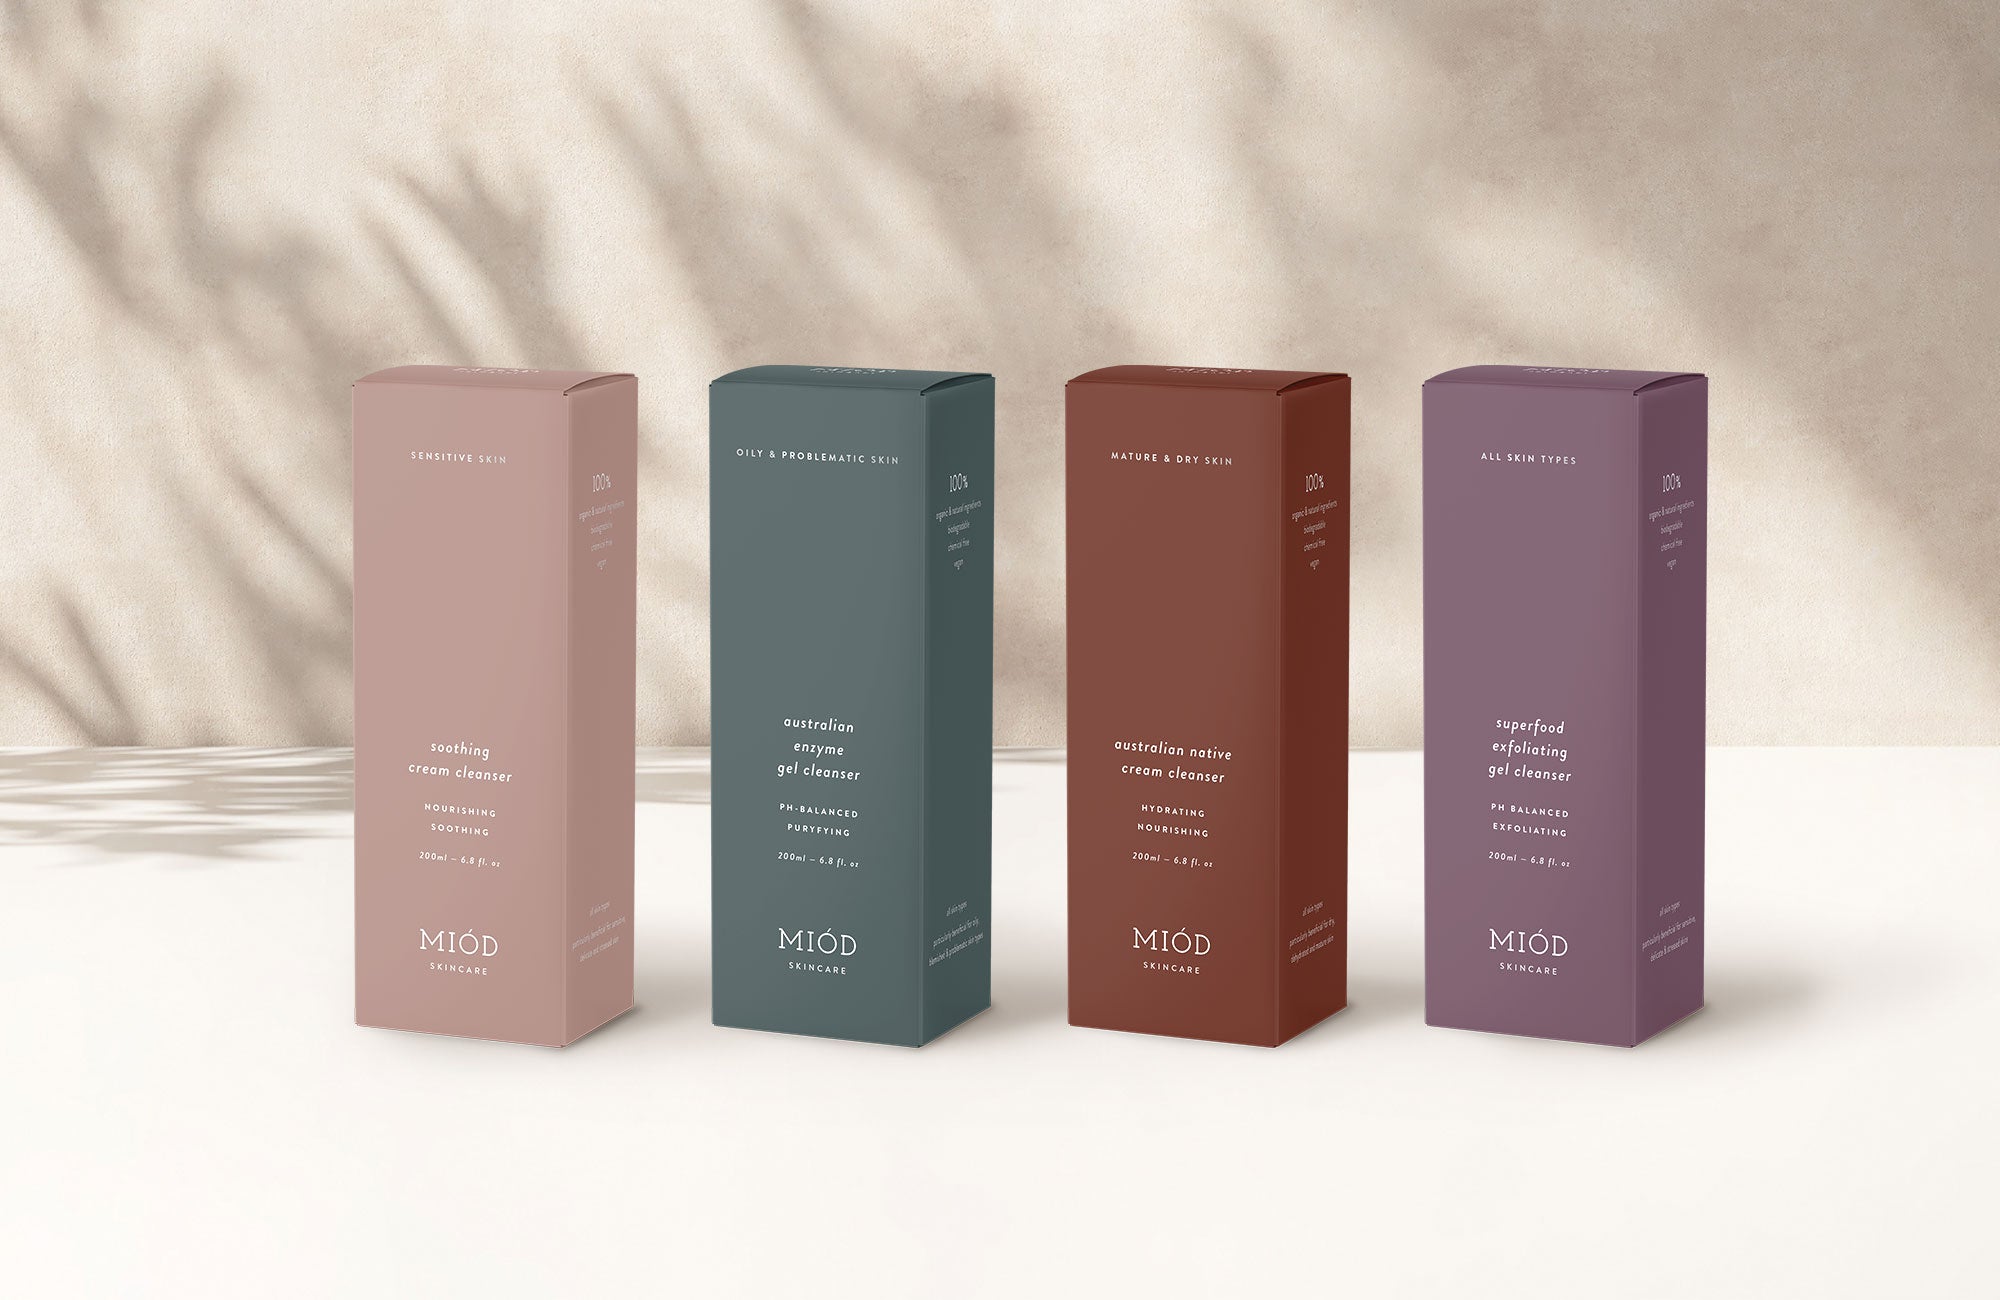 Karolina Król Studio elegant sustainable packaging design for Miód Skincare cleanser range